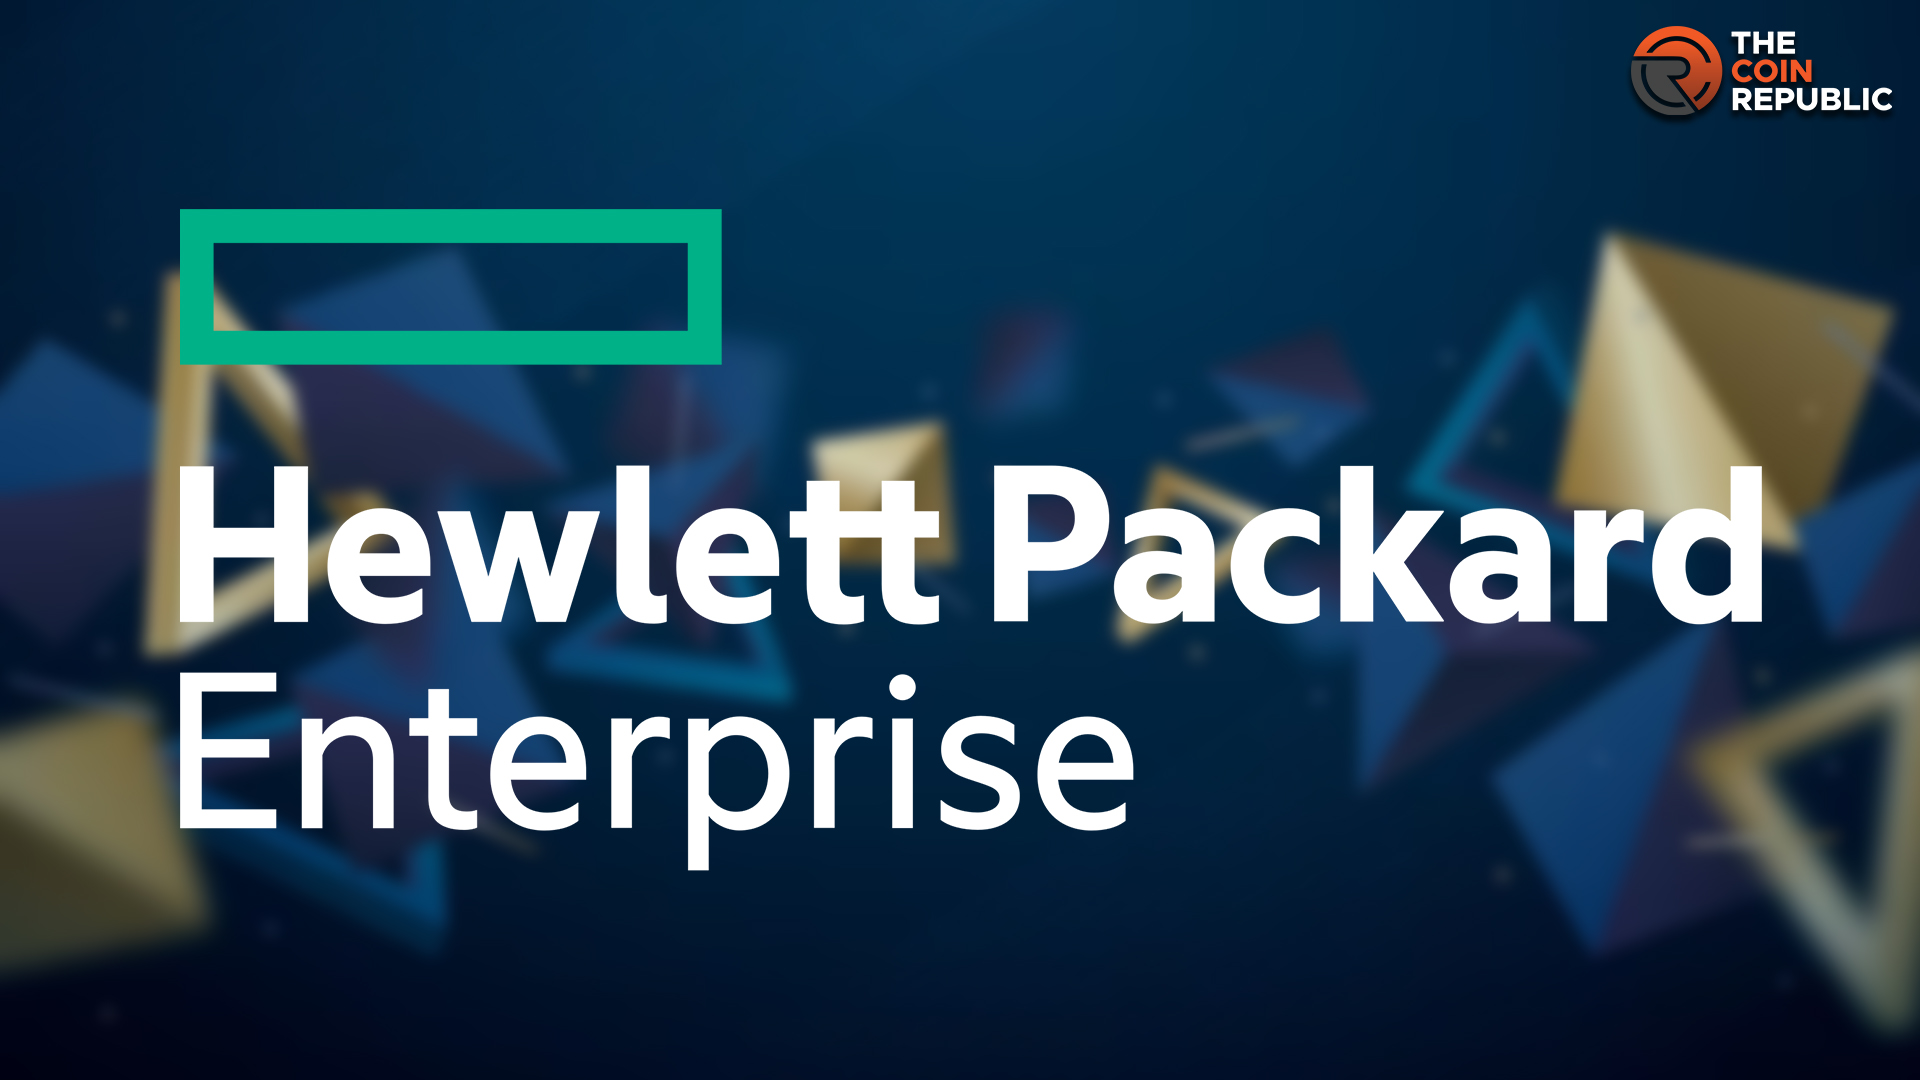 Hewlett Packard Enterprise (HPE) Stock Rallies After Q3 Results